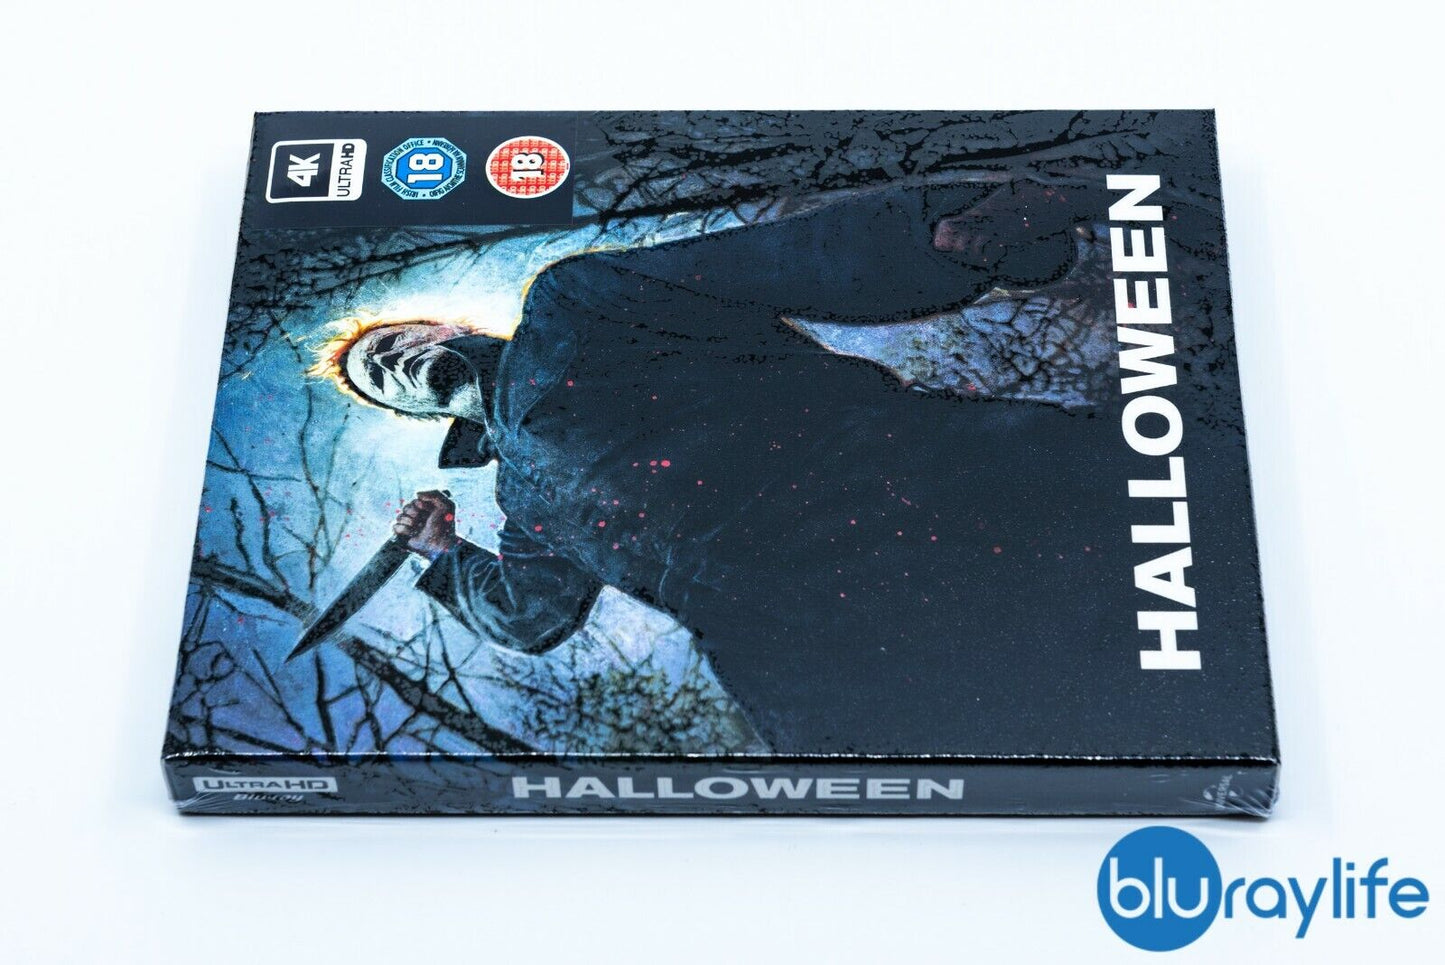 Halloween (2018) 4K + Bonus Blu-ray Steelbook EverythingBlu BPS#005 Exclusive Full Slip